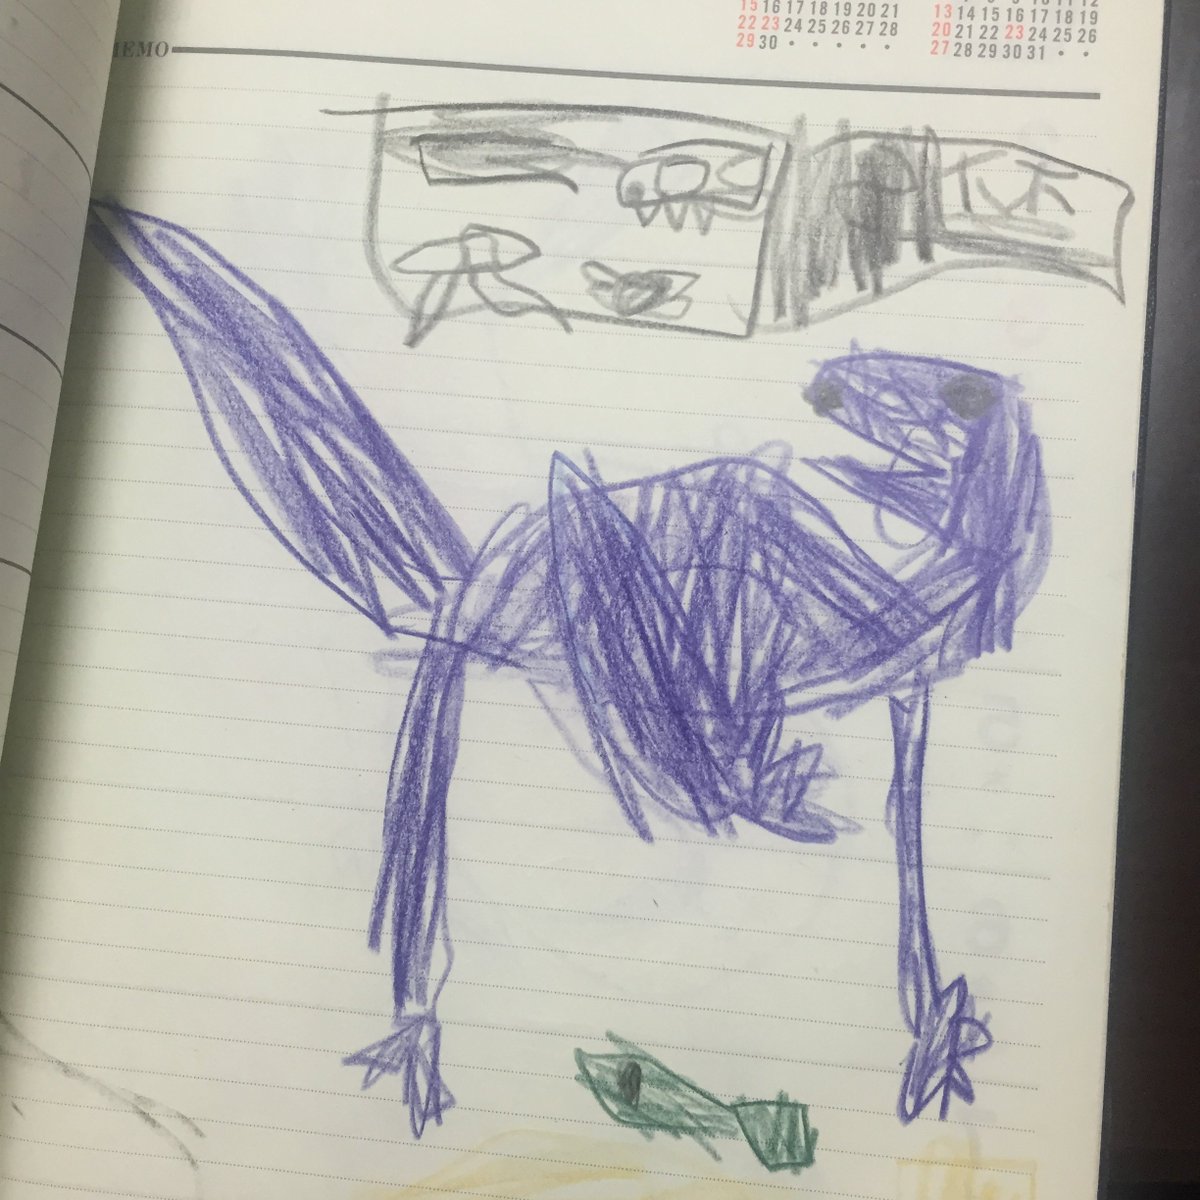 ディノサンは子供にだけ向けて描いているマンガではありませんが、やはり子供達が楽しんで読んでくれているのを知ると、無条件に何より嬉しくなります。それは自分も子供の頃に一冊の恐竜図鑑に出会い、恐竜に夢中になった過去があるからだと思います。 